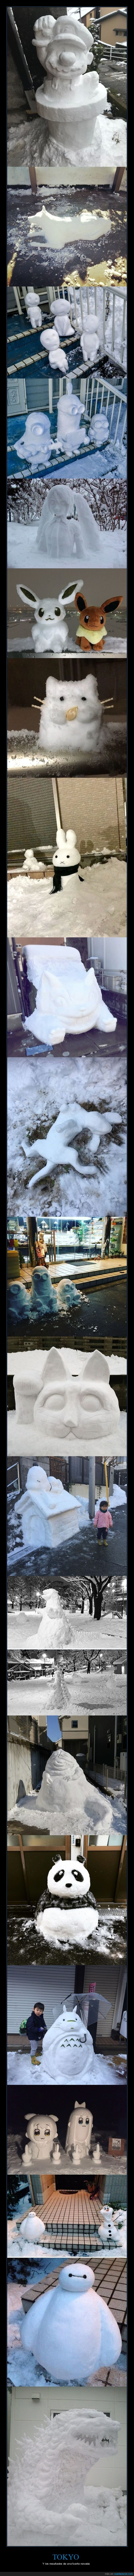 japón,tokio,nevada,muñecos de nieve,nieve